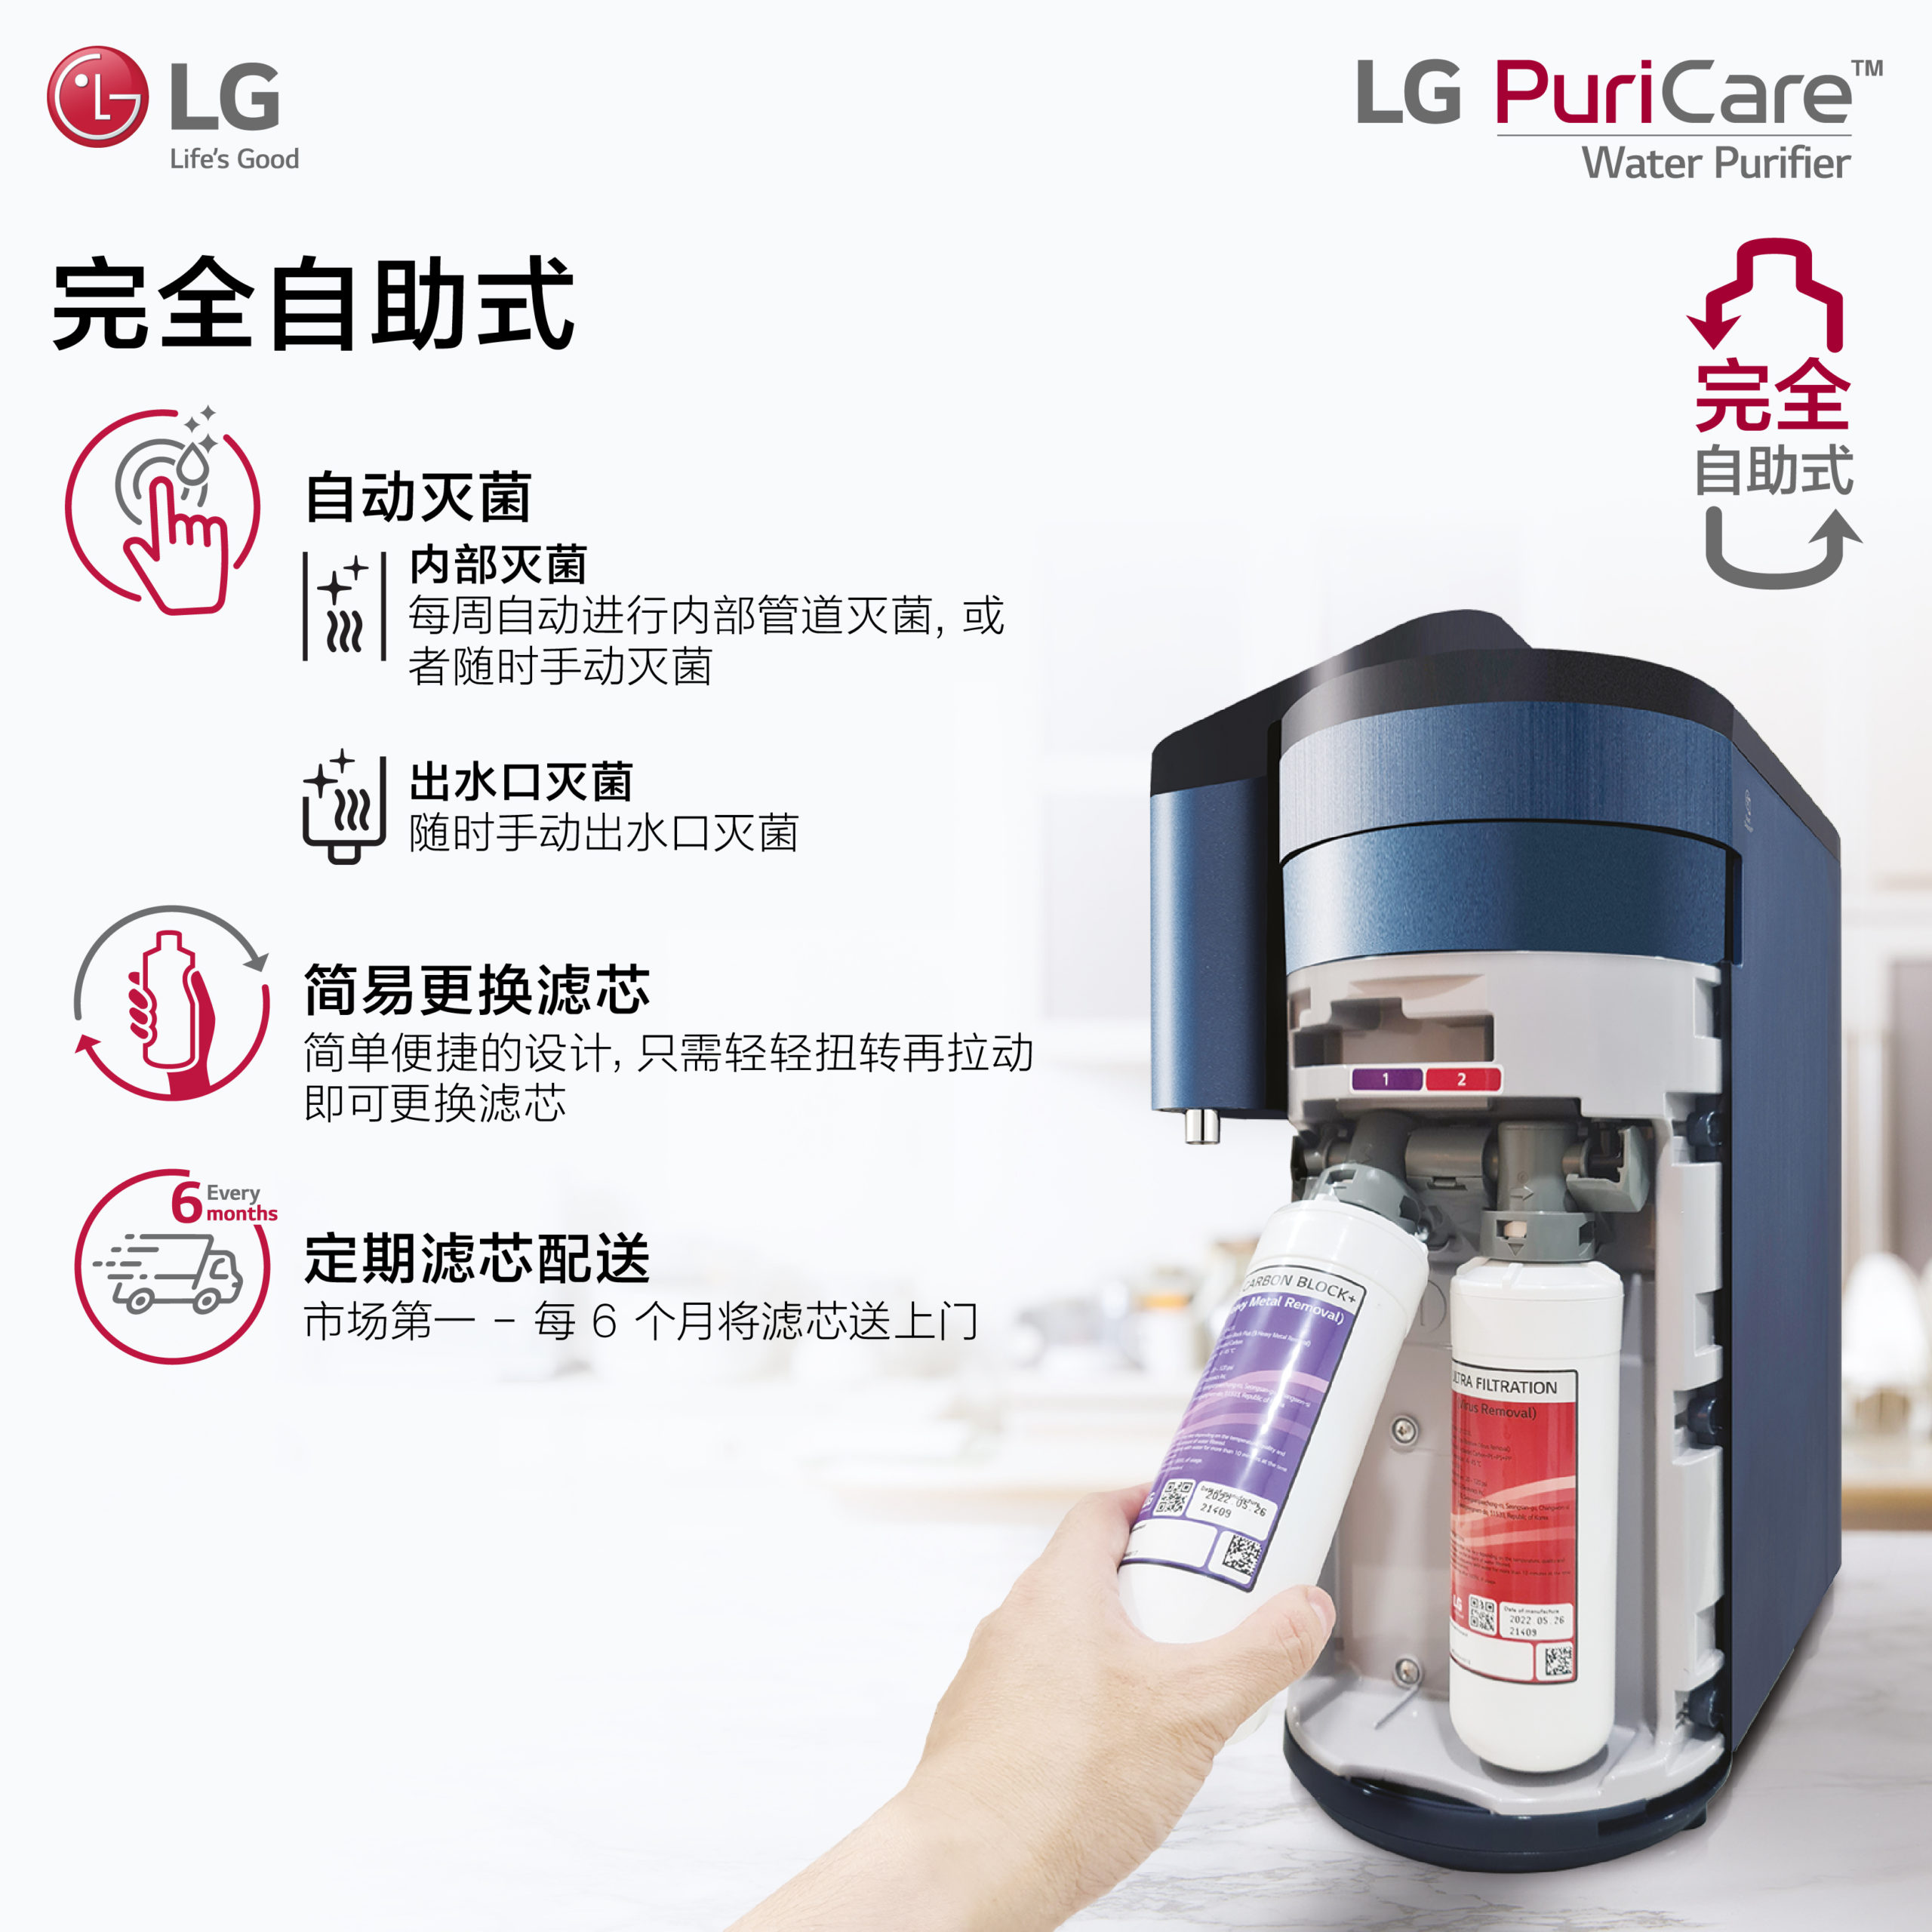 全新LG PuriCare™自助式无水箱净水机正式登陆大马 8